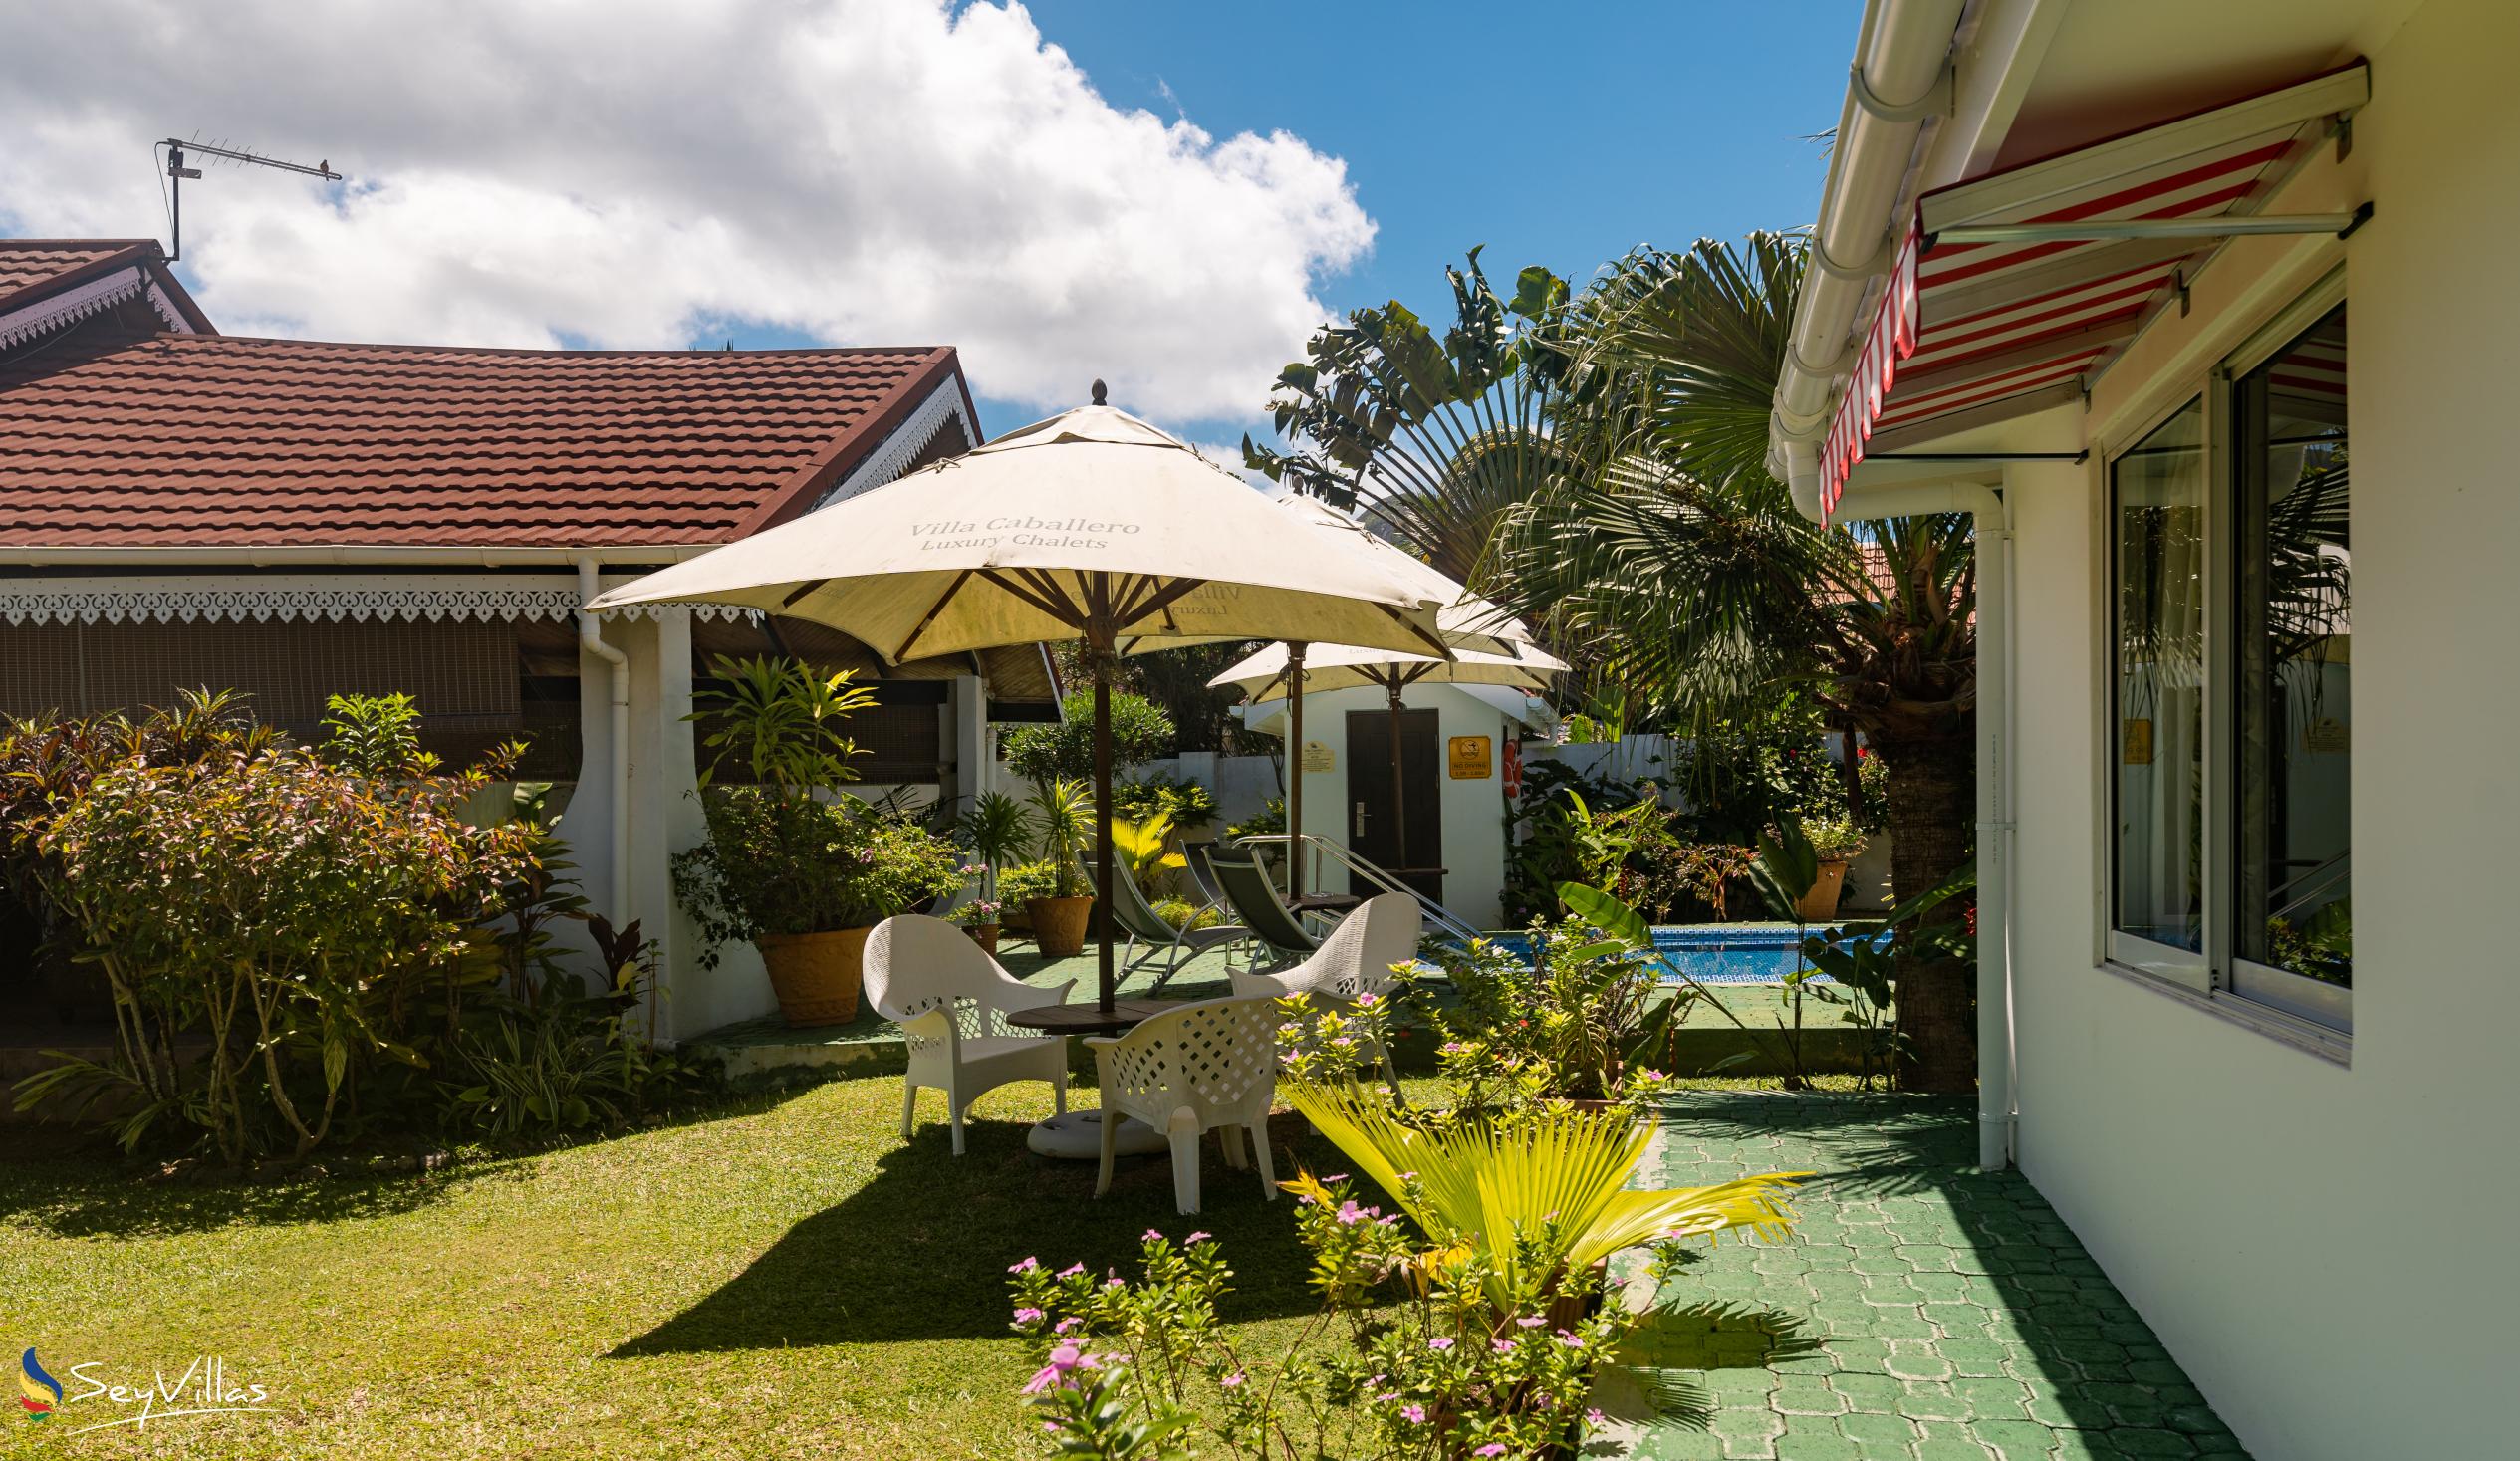 Foto 11: Villa Caballero - Extérieur - Mahé (Seychelles)